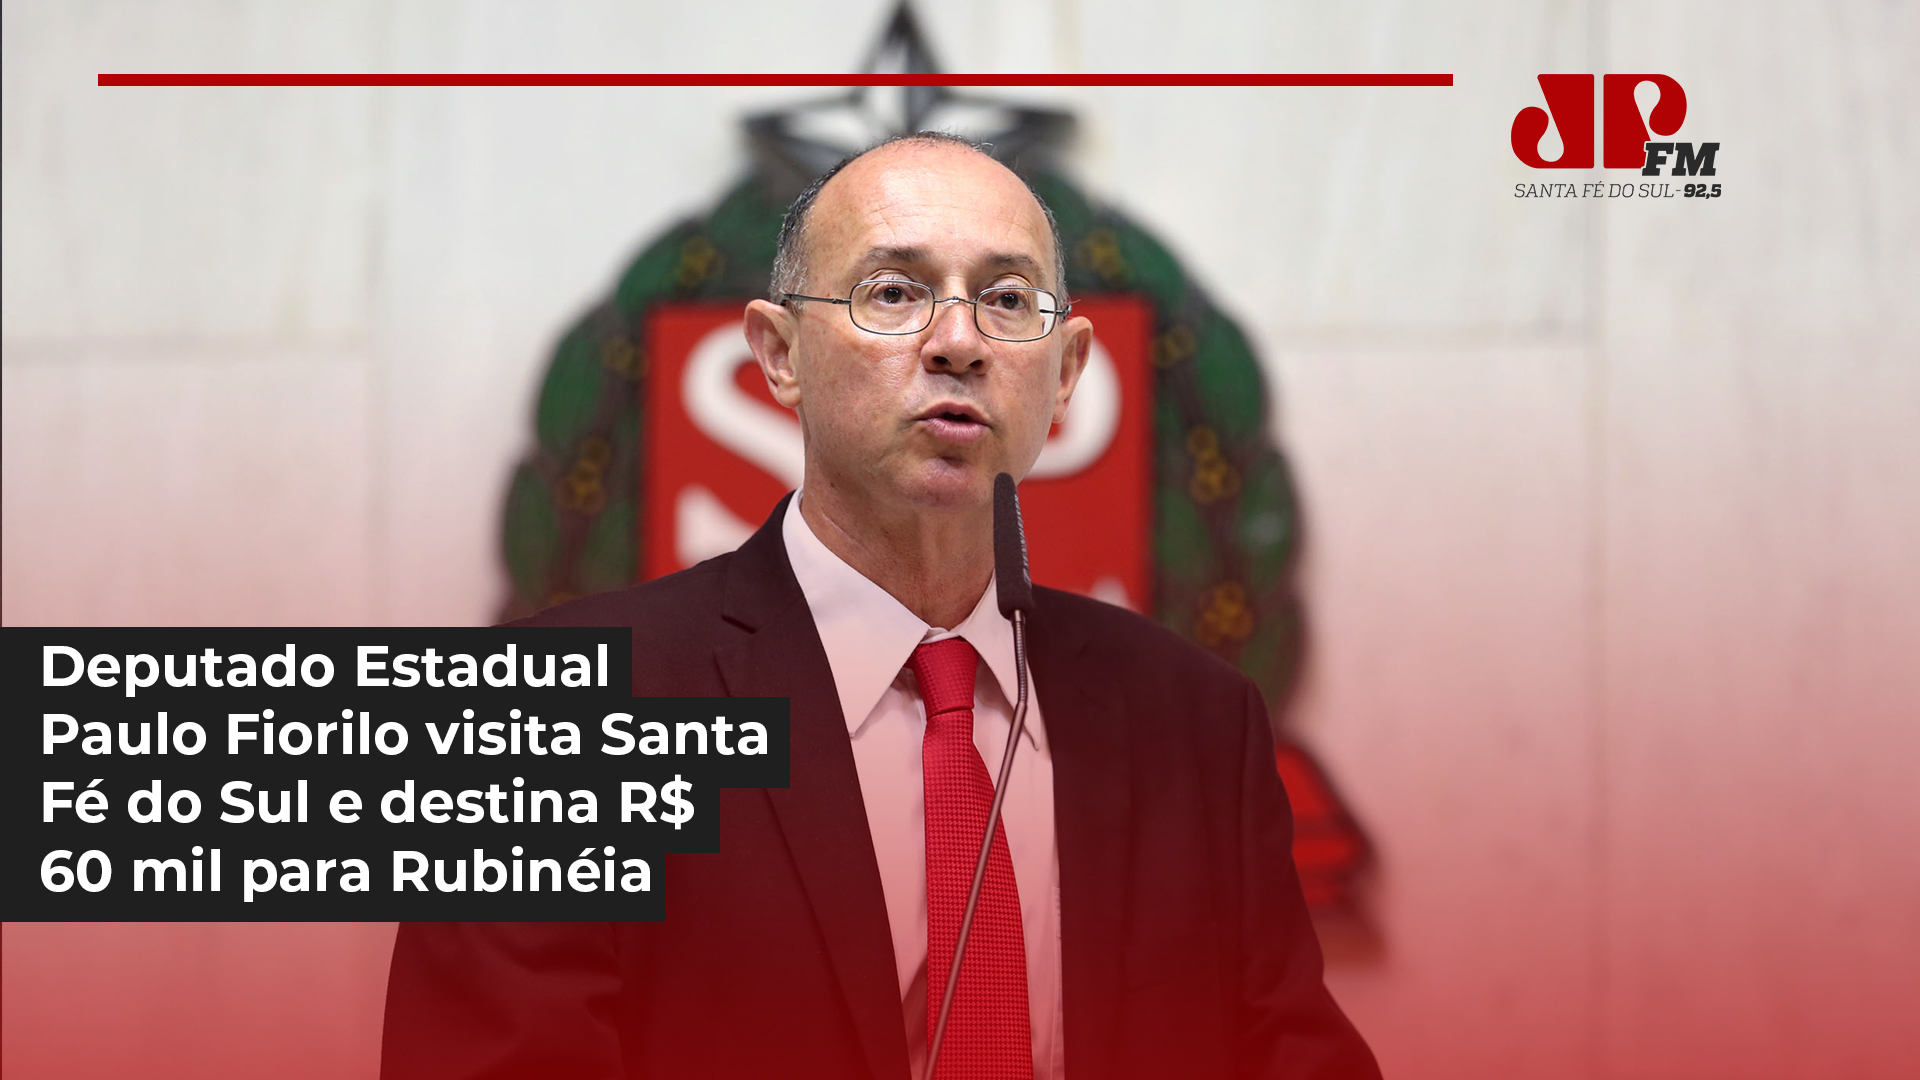 Deputado Estadual Paulo Fiorilo visita Santa Fé do Sul e destina R$ 60 mil para Rubinéia